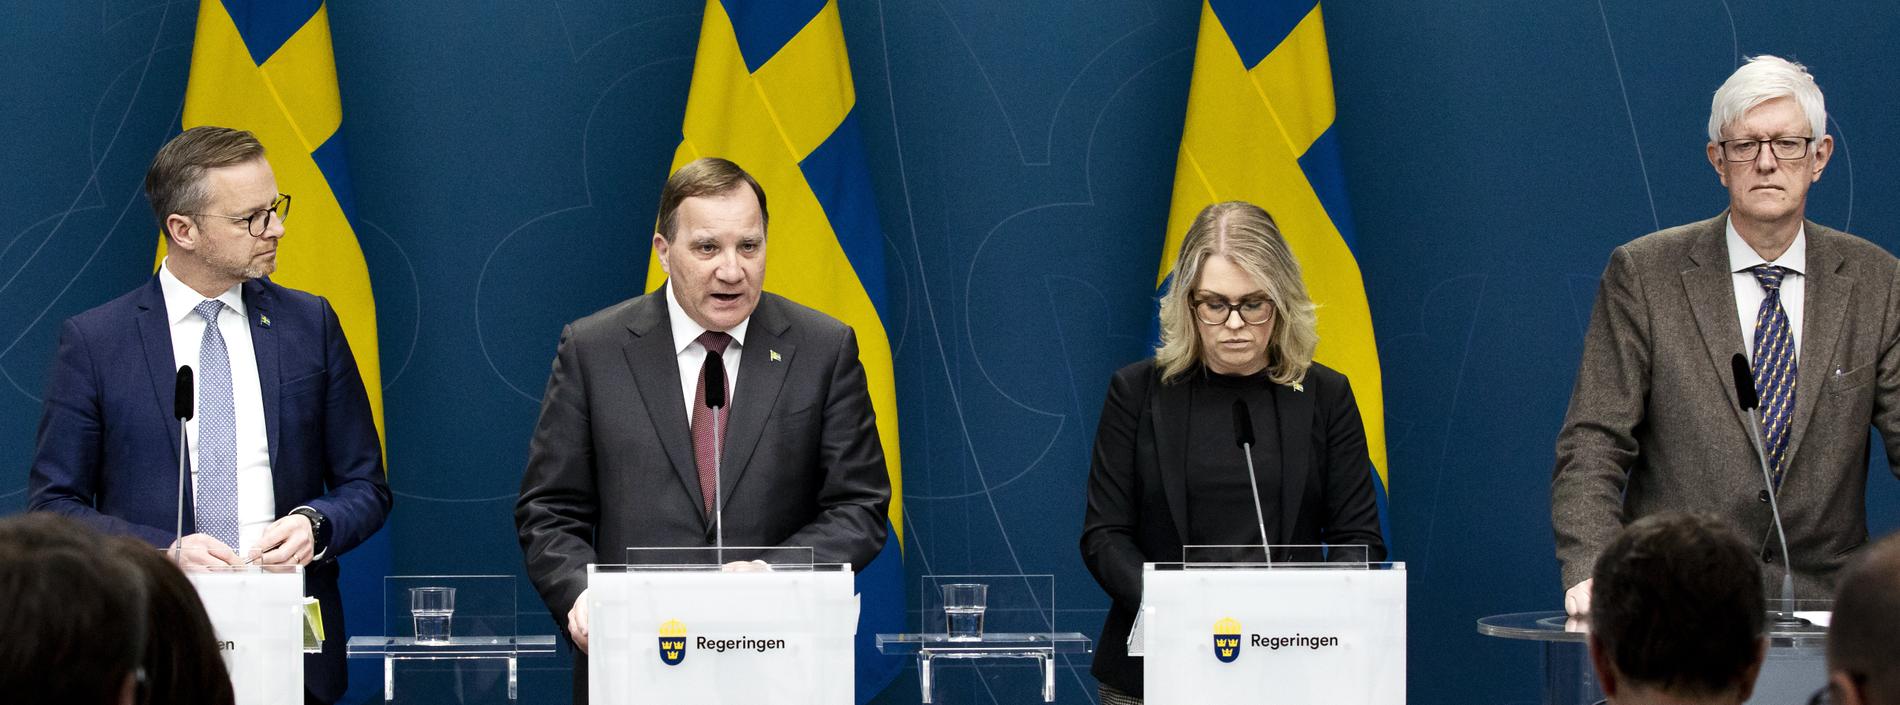 Det är inte ovanligt att omfattande, djupa kriser gynnar sittande regering, skriver Aftonbladets Lena Mellin.